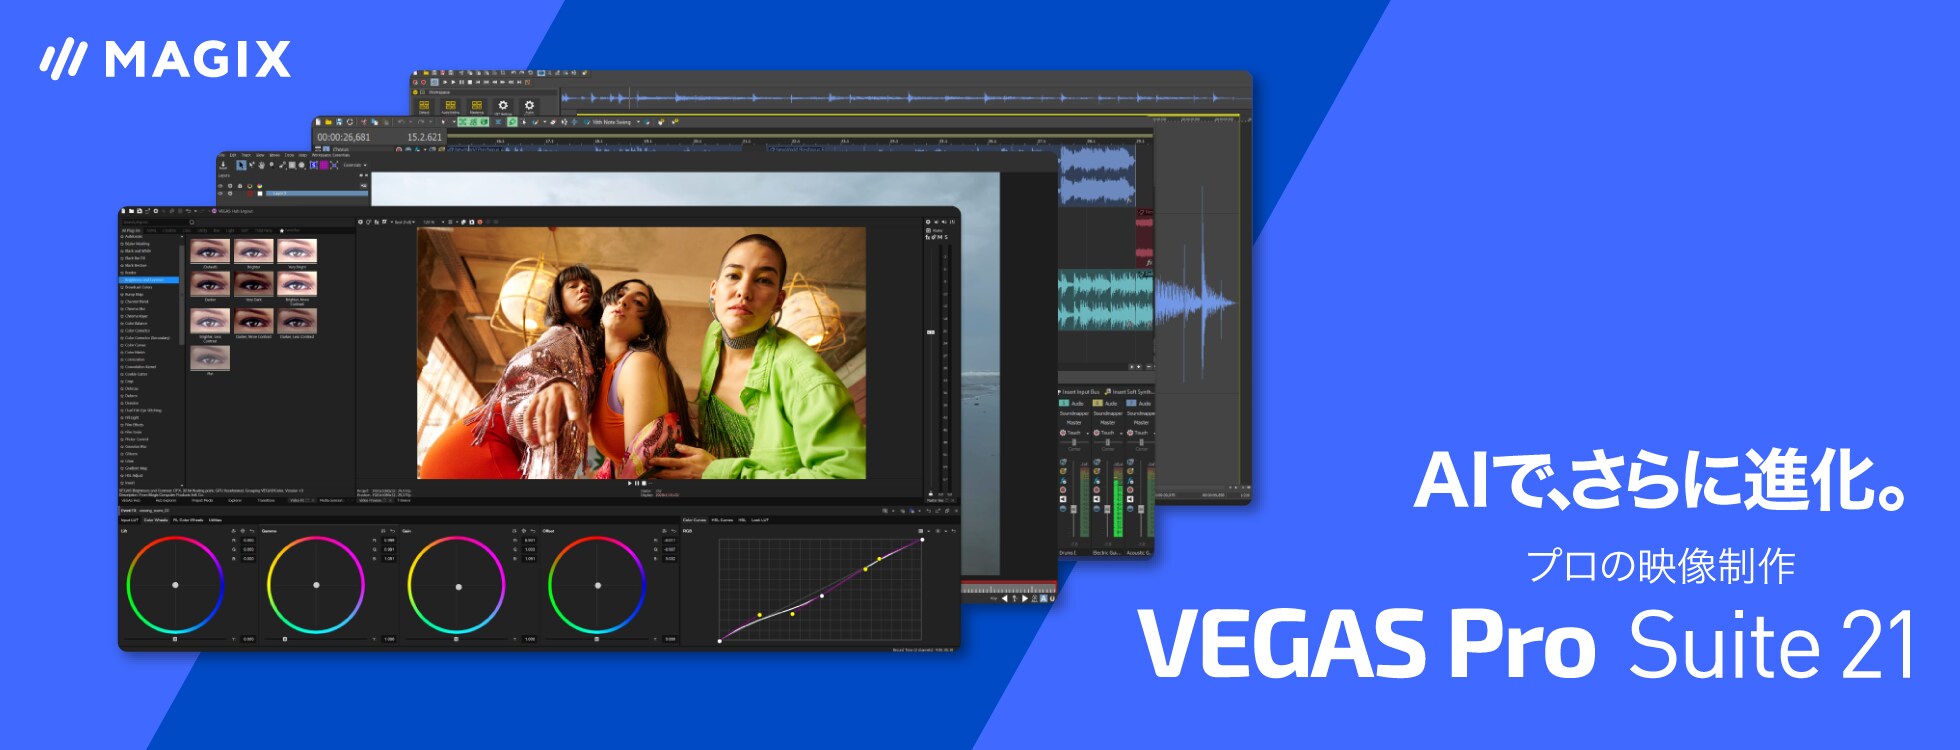  プロの映像制作ソフト「VEGAS Pro Suite 21」